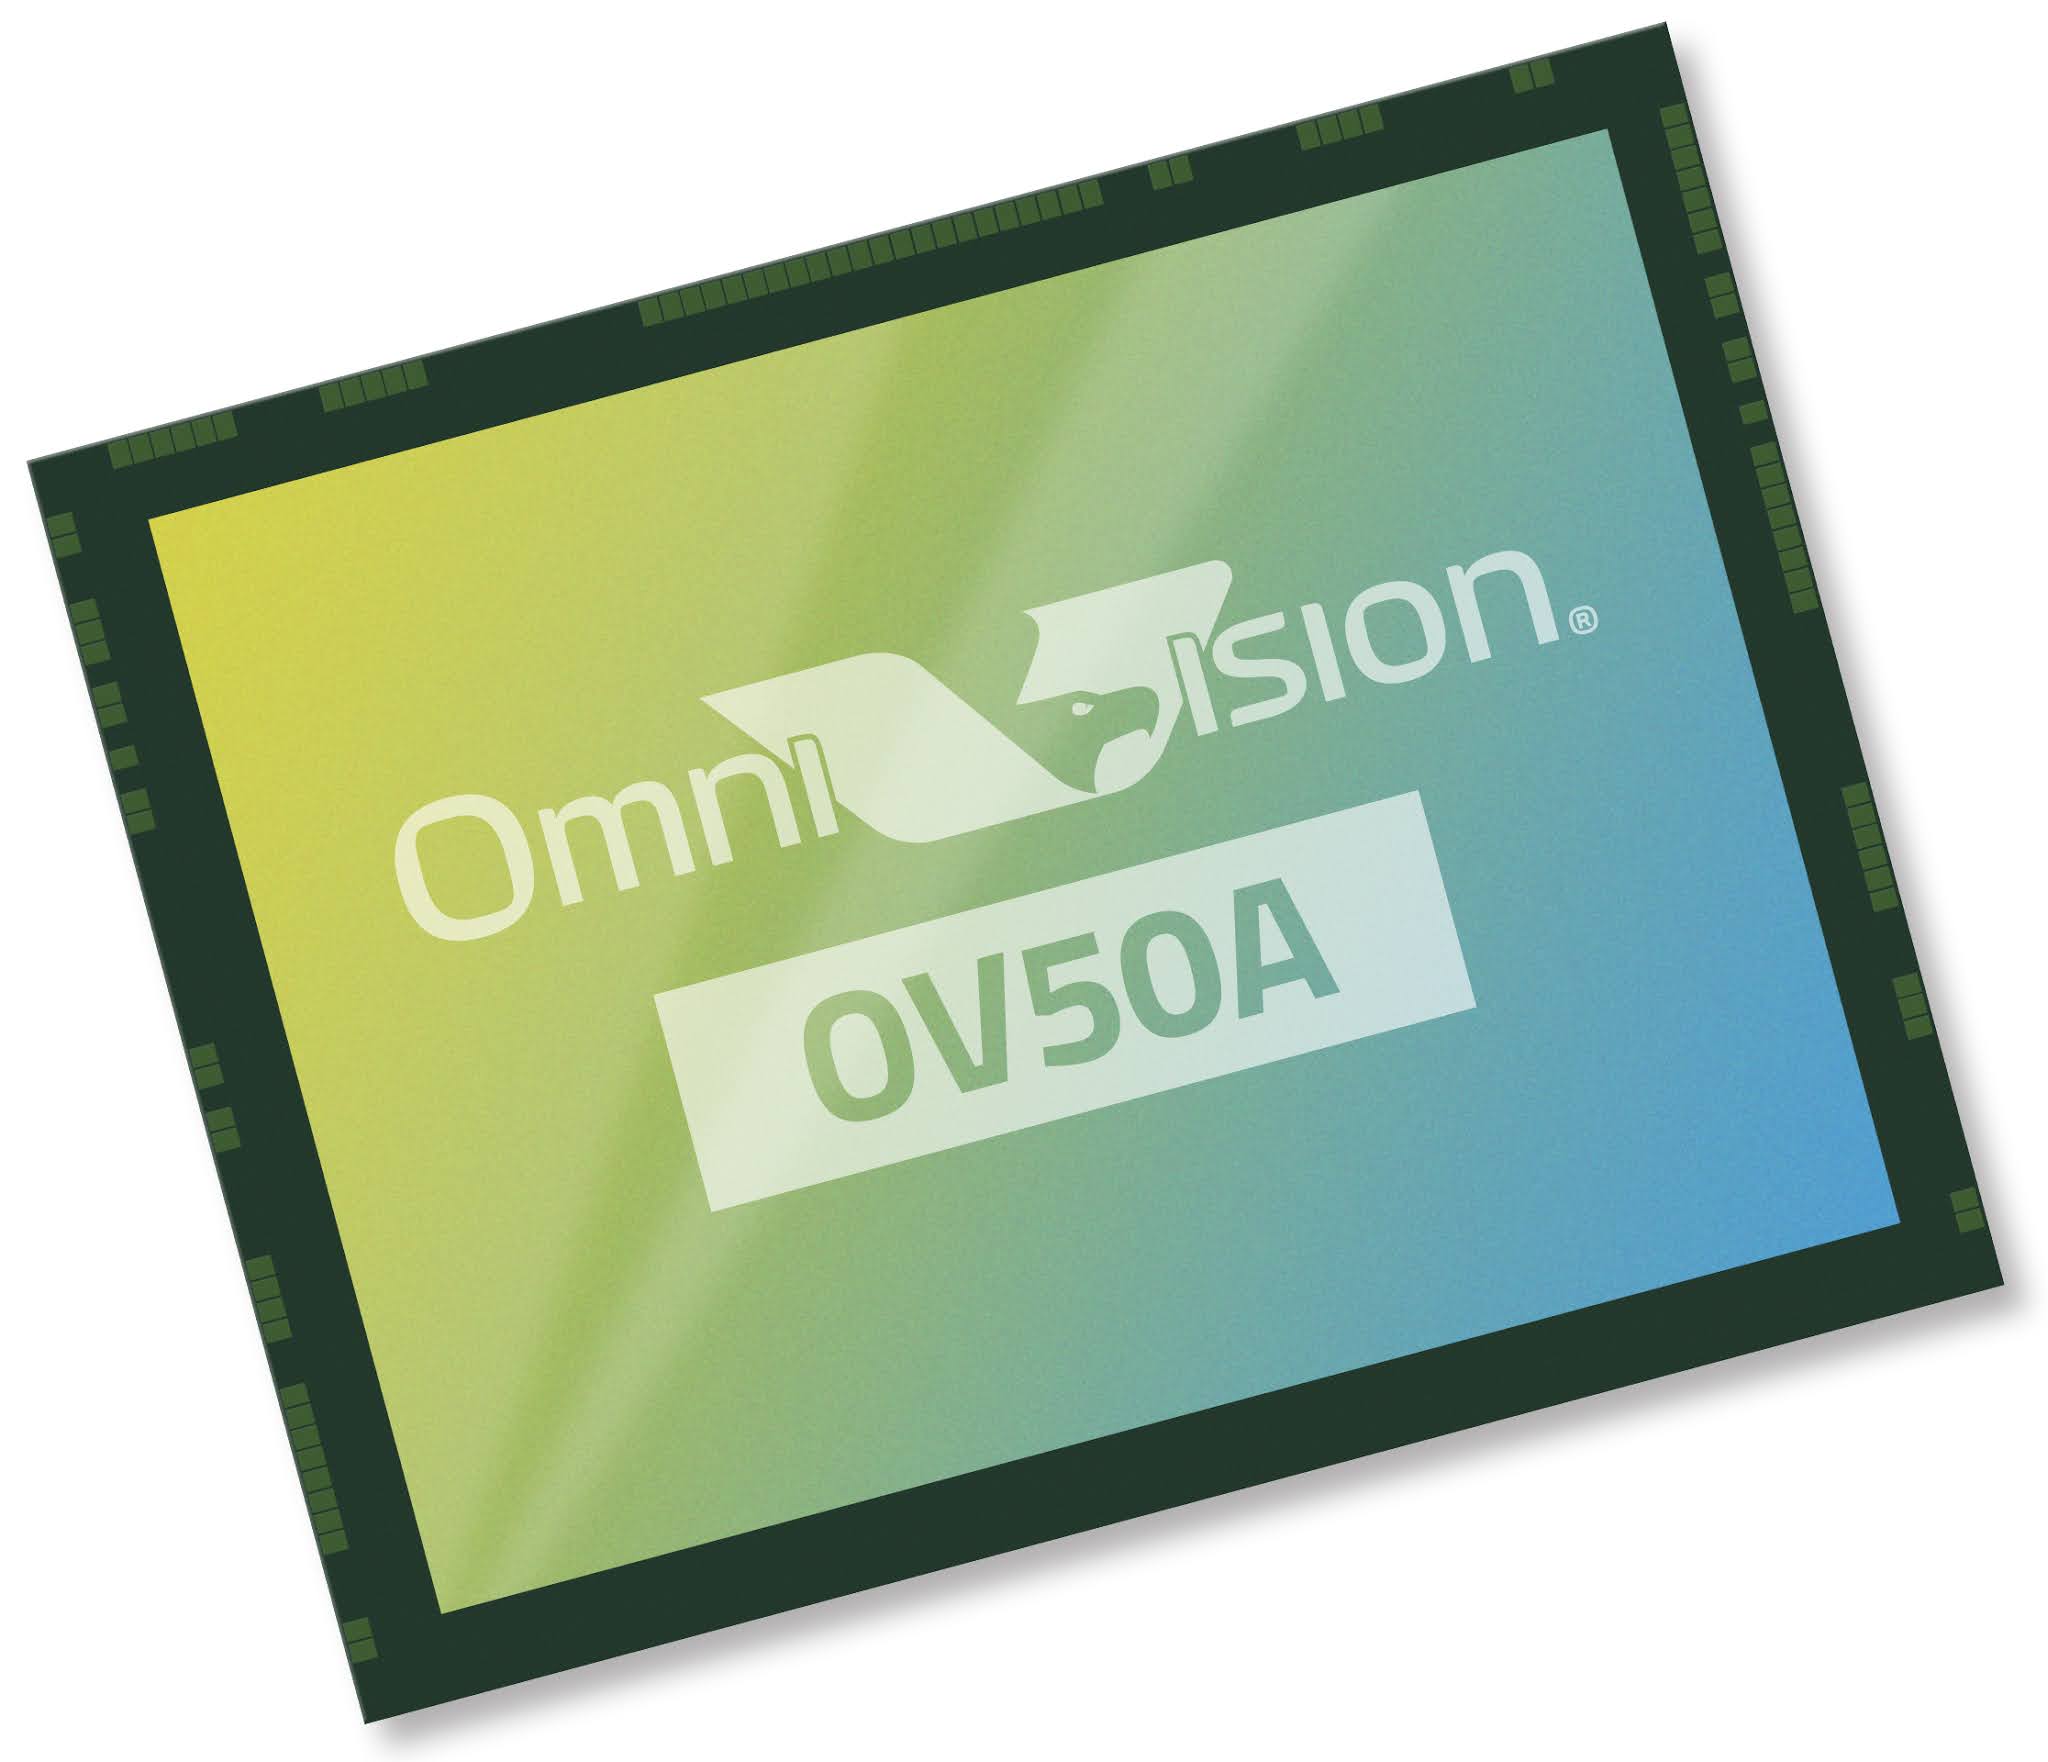 OmniVision ra mắt cảm biến ảnh 50MP OV50A cho smartphone với khả năng lấy nét tự động ấn cực nhanh